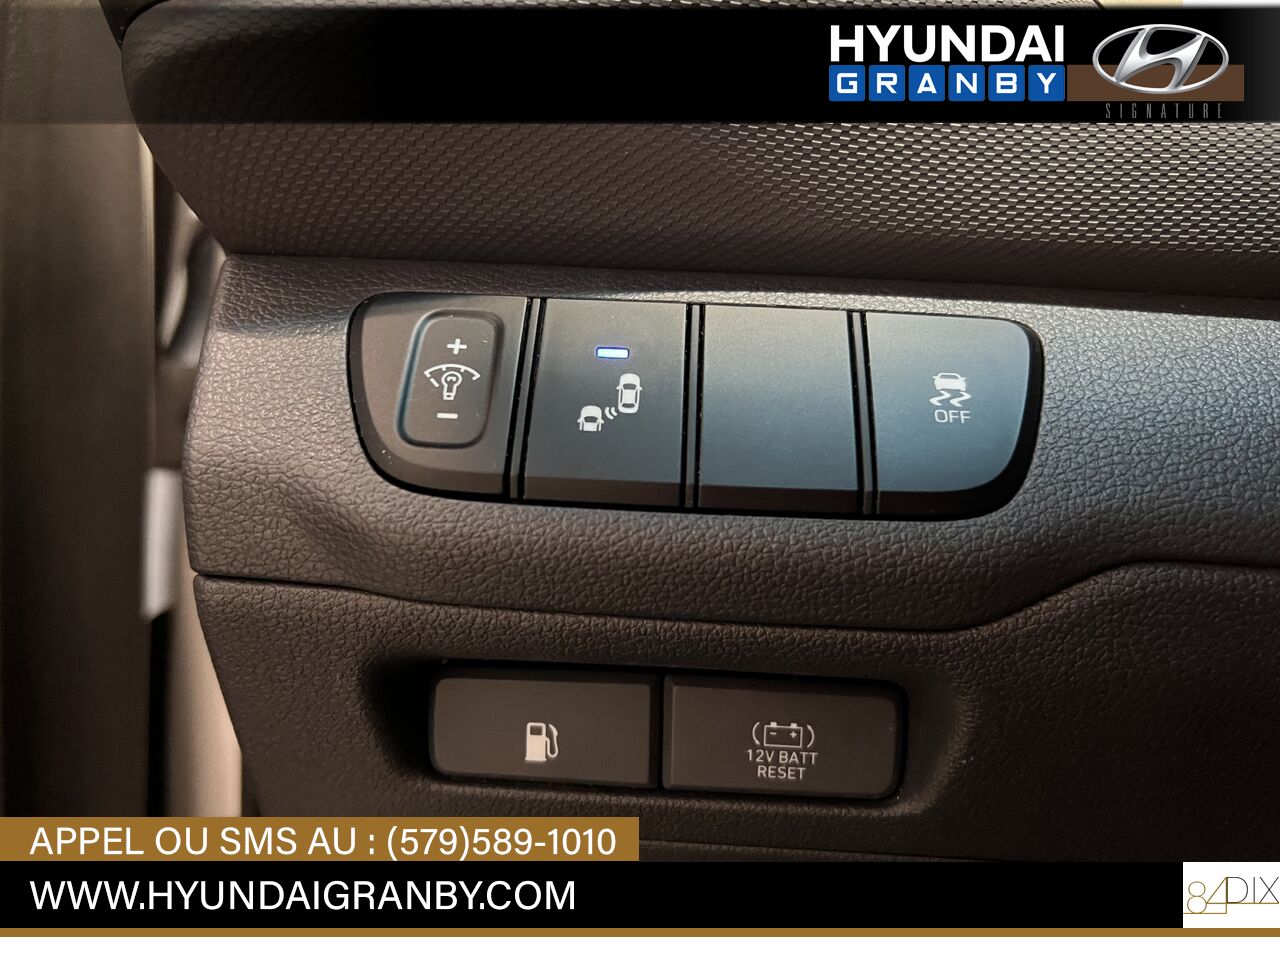 2017 Hyundai Ioniq hybride Granby - photo #23